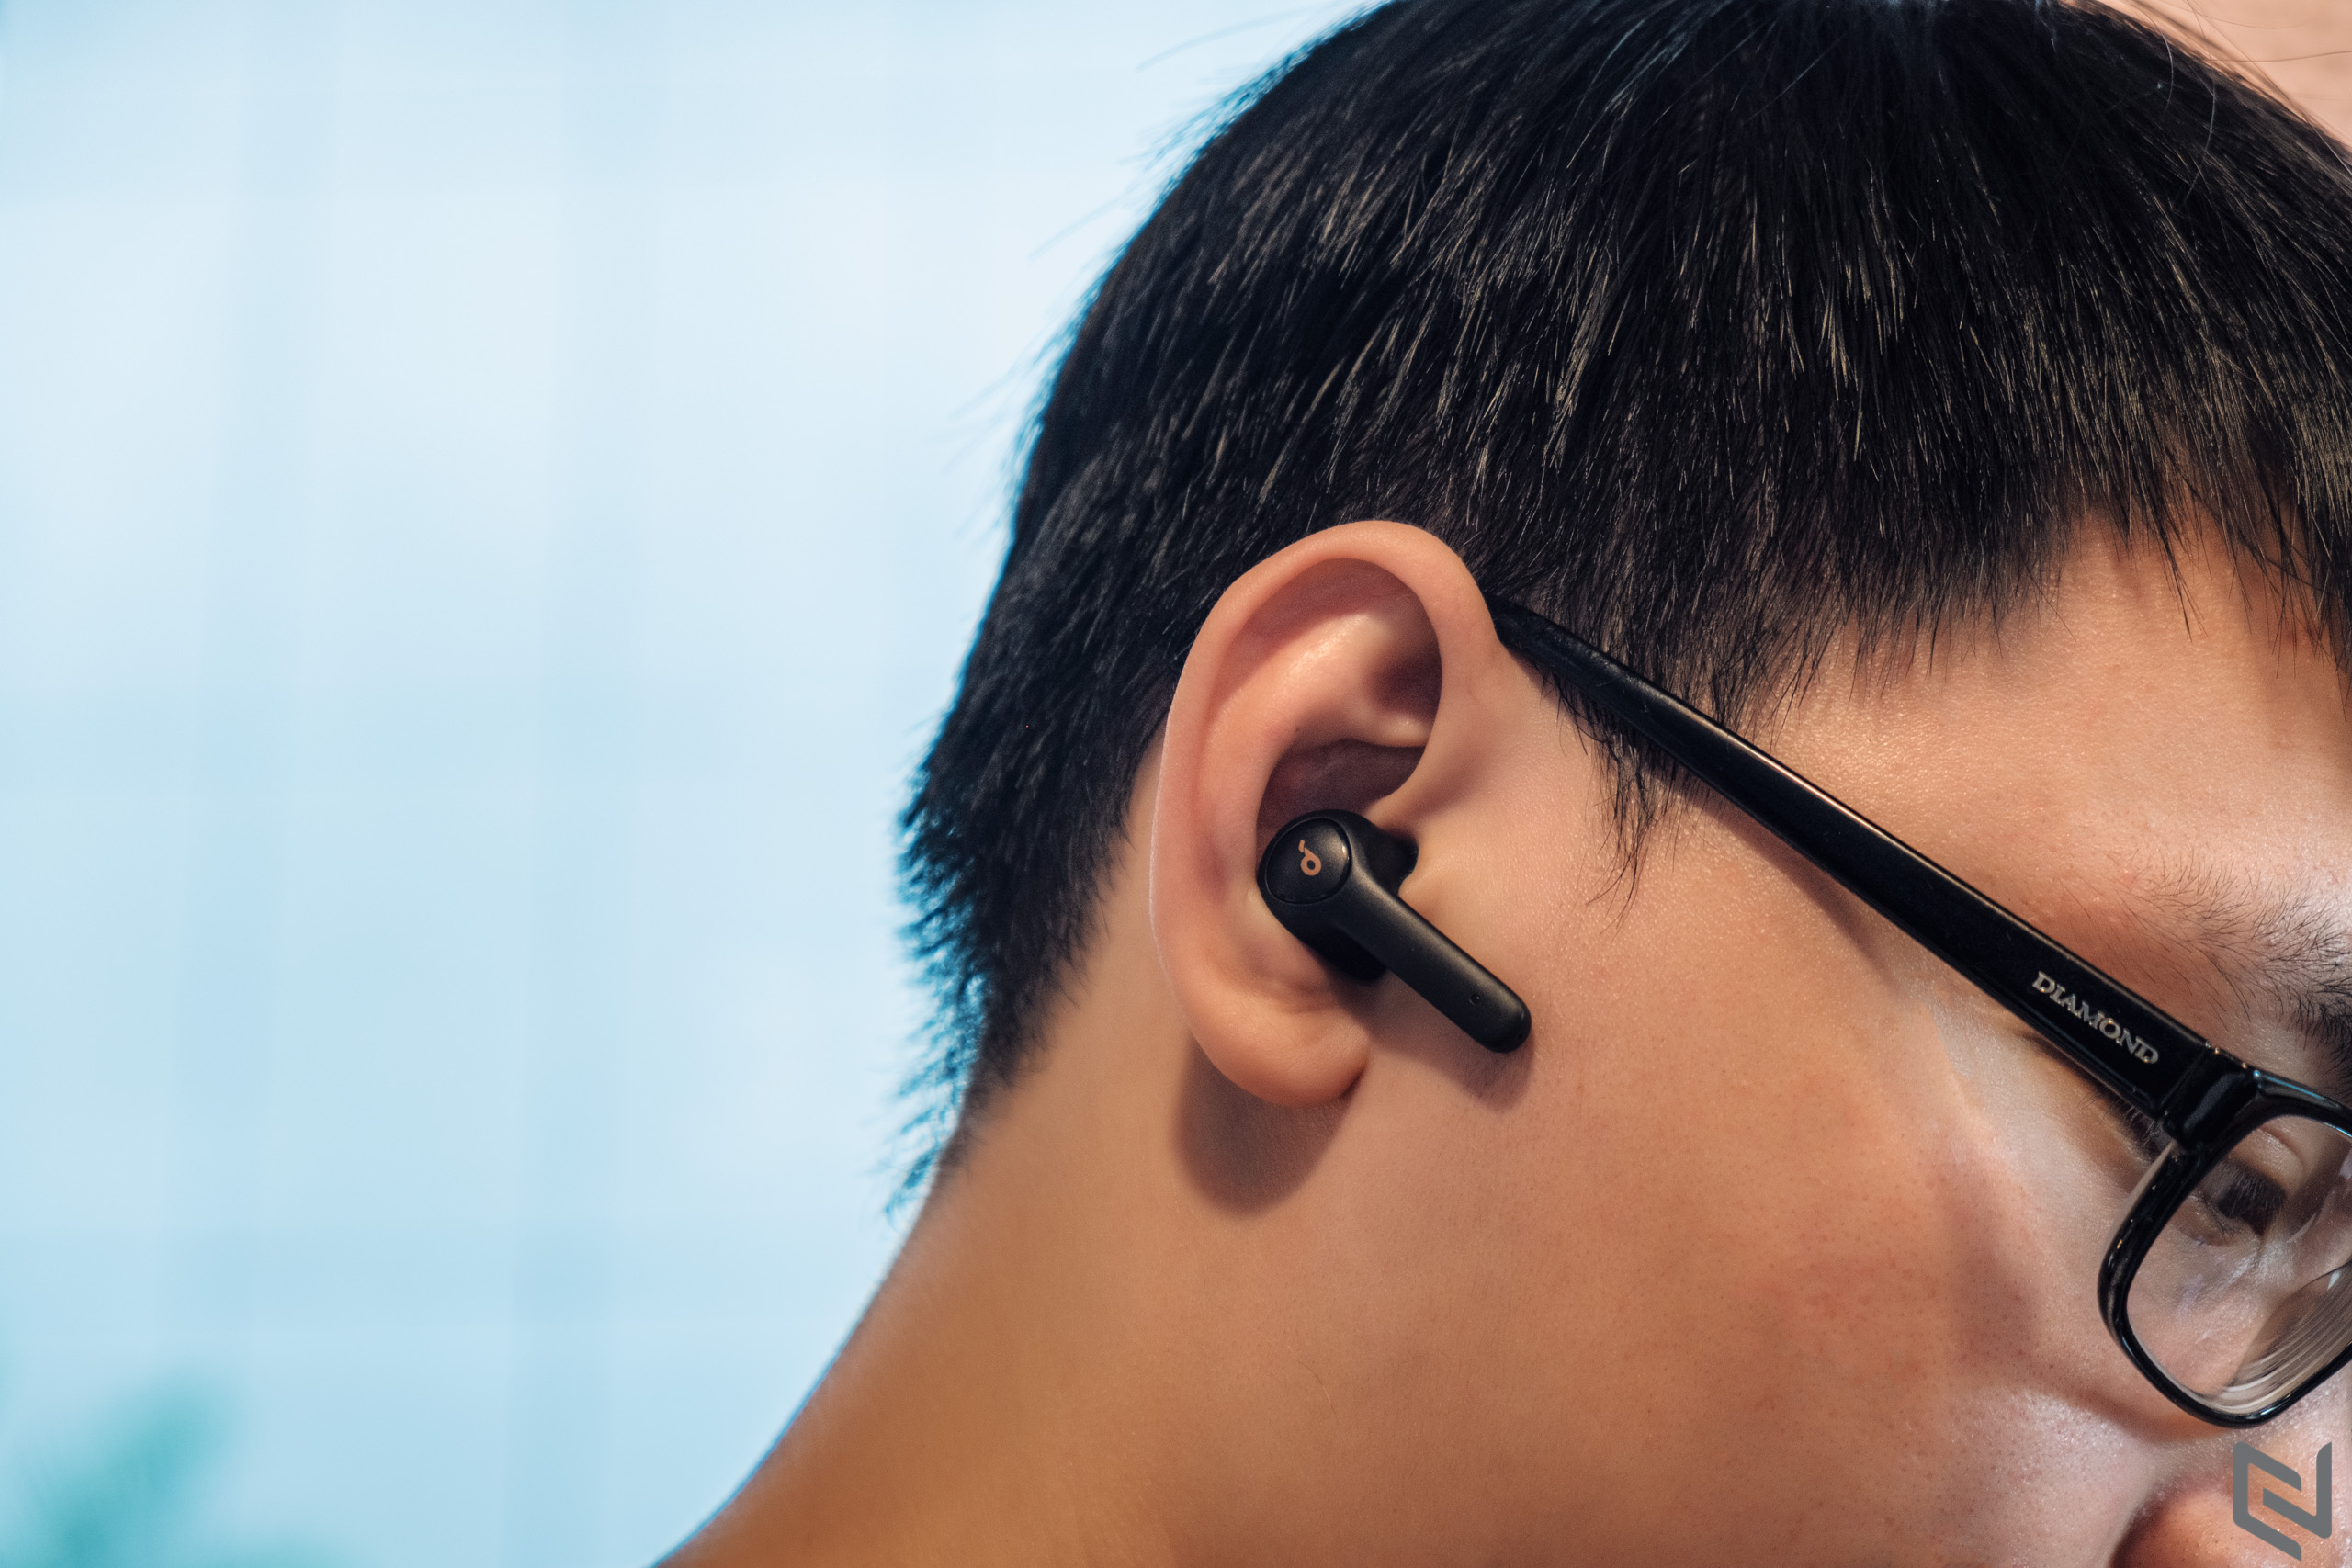 Tai nghe true wireless Anker SoundCore Life P2: Một trong những chiếc tai nghe true wireless giá rẻ tốt nhất hiện nay